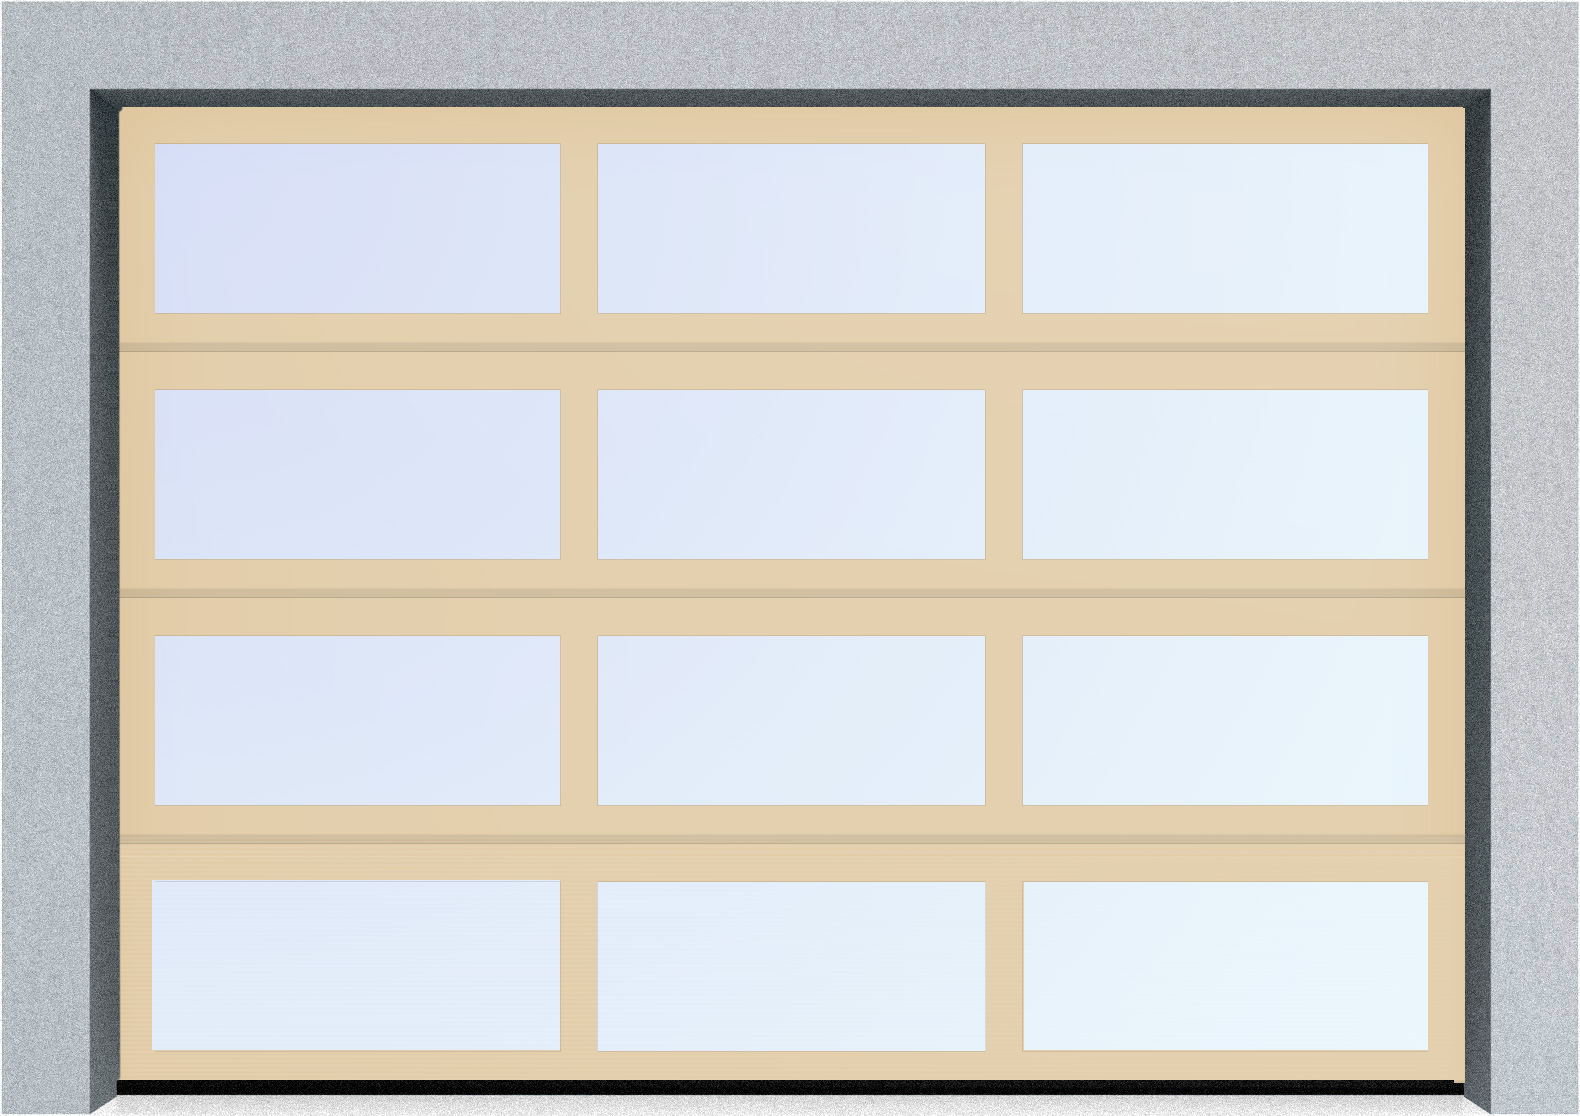  Секционные панорамные ворота серии AluTrend (АЛП) 2625х1875 нижняя панель стандартные цвета, фото 1 